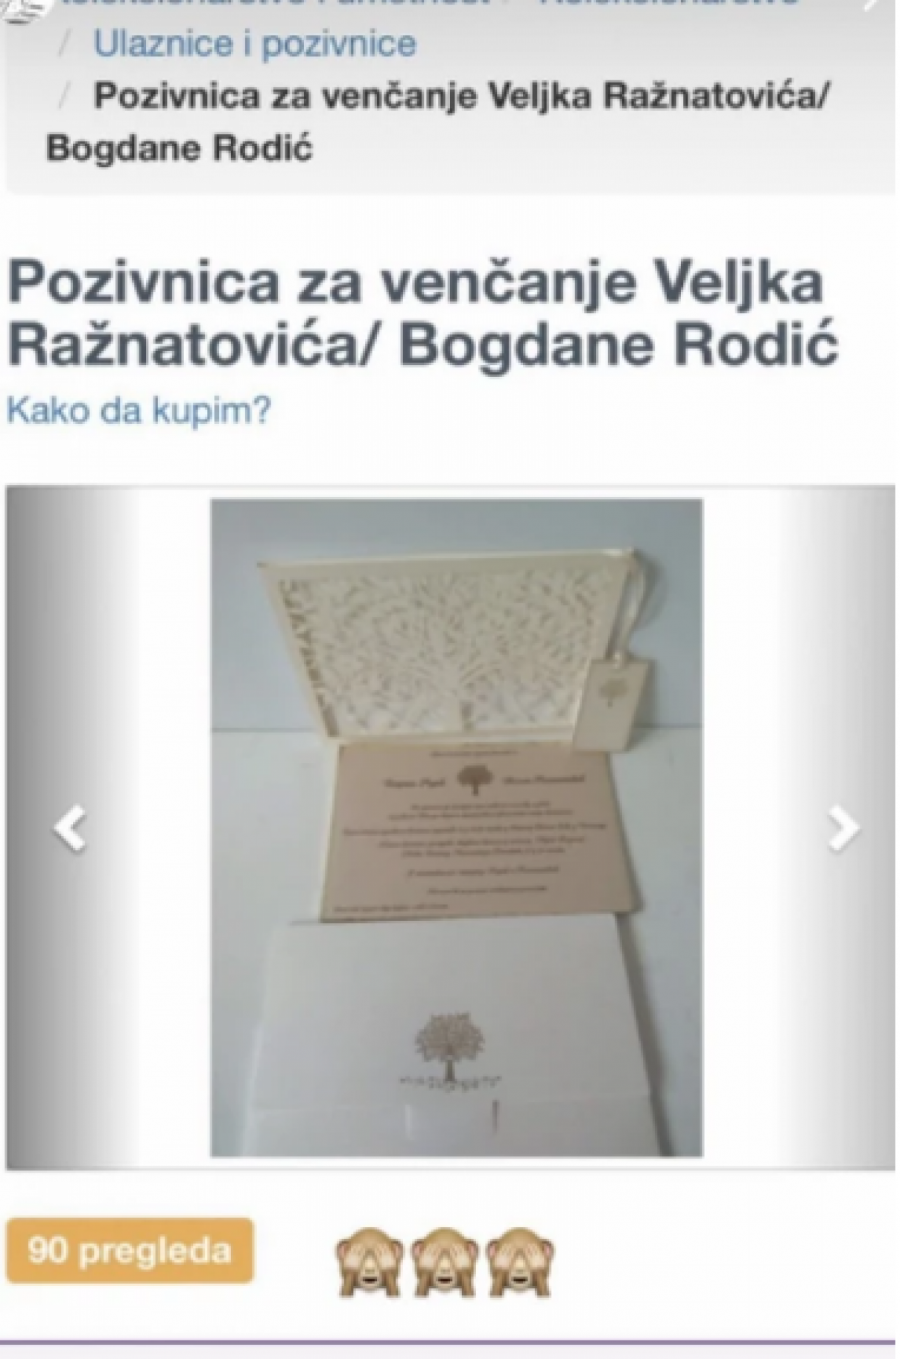 CENA JE PRAVA SITNICA Prodaje se pozivnica sa svadbe Veljka Ražnatovića i Bogdane Rodić, oglas napravio opštu pometnju (FOTO)